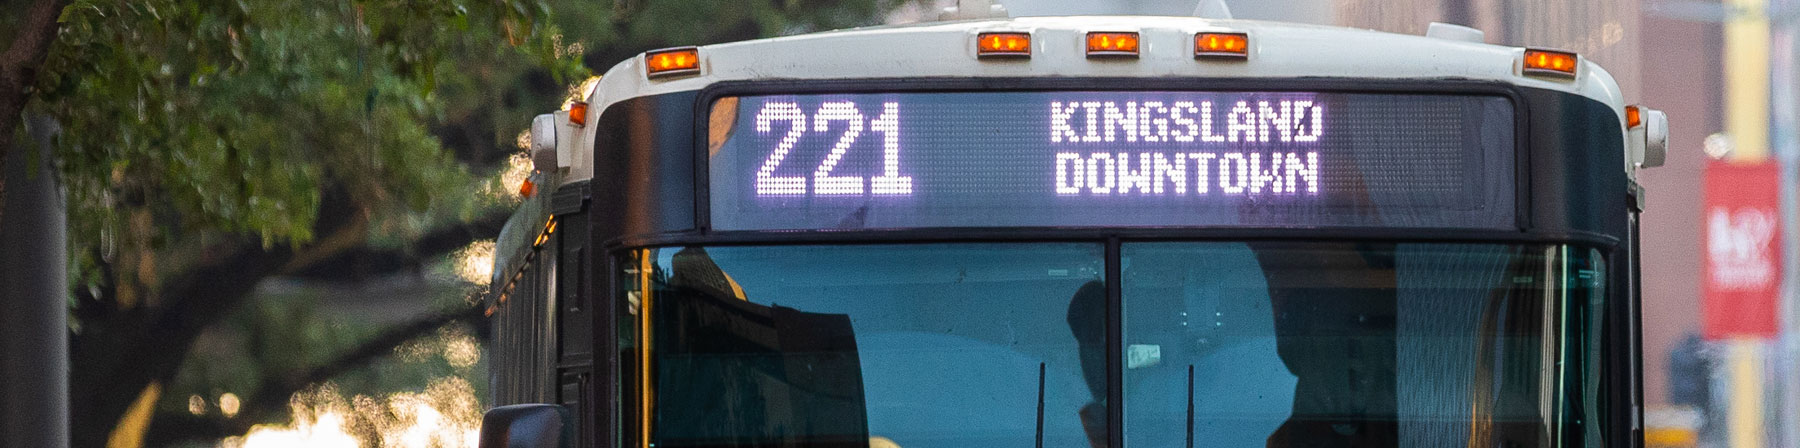 221 Kingsland Park & Ride bus